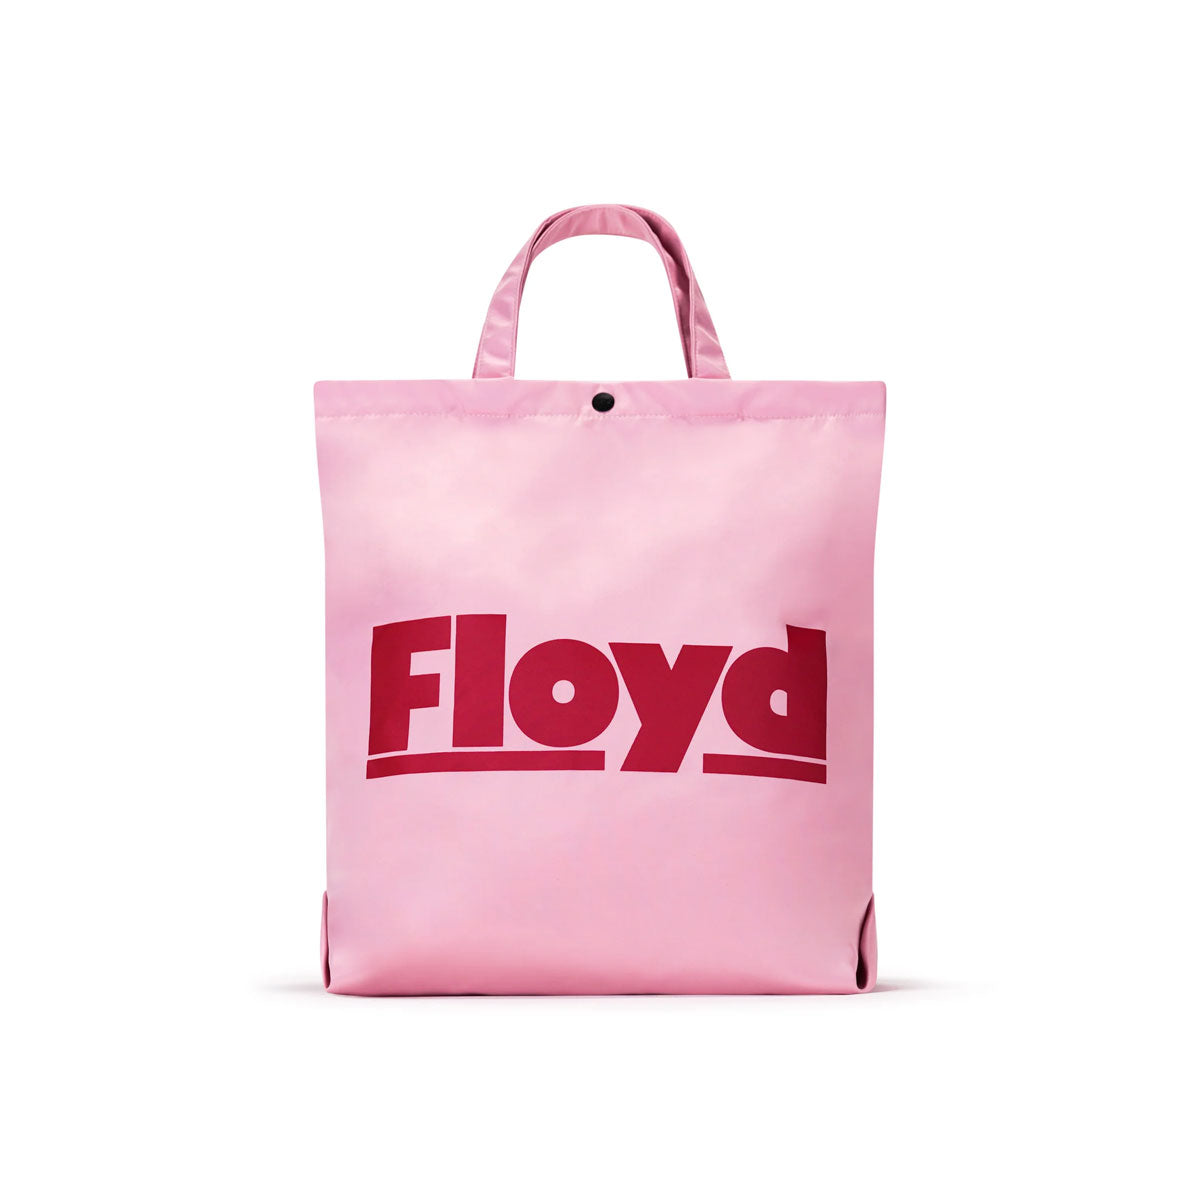 Floyd : Shopper : Sugar Pink